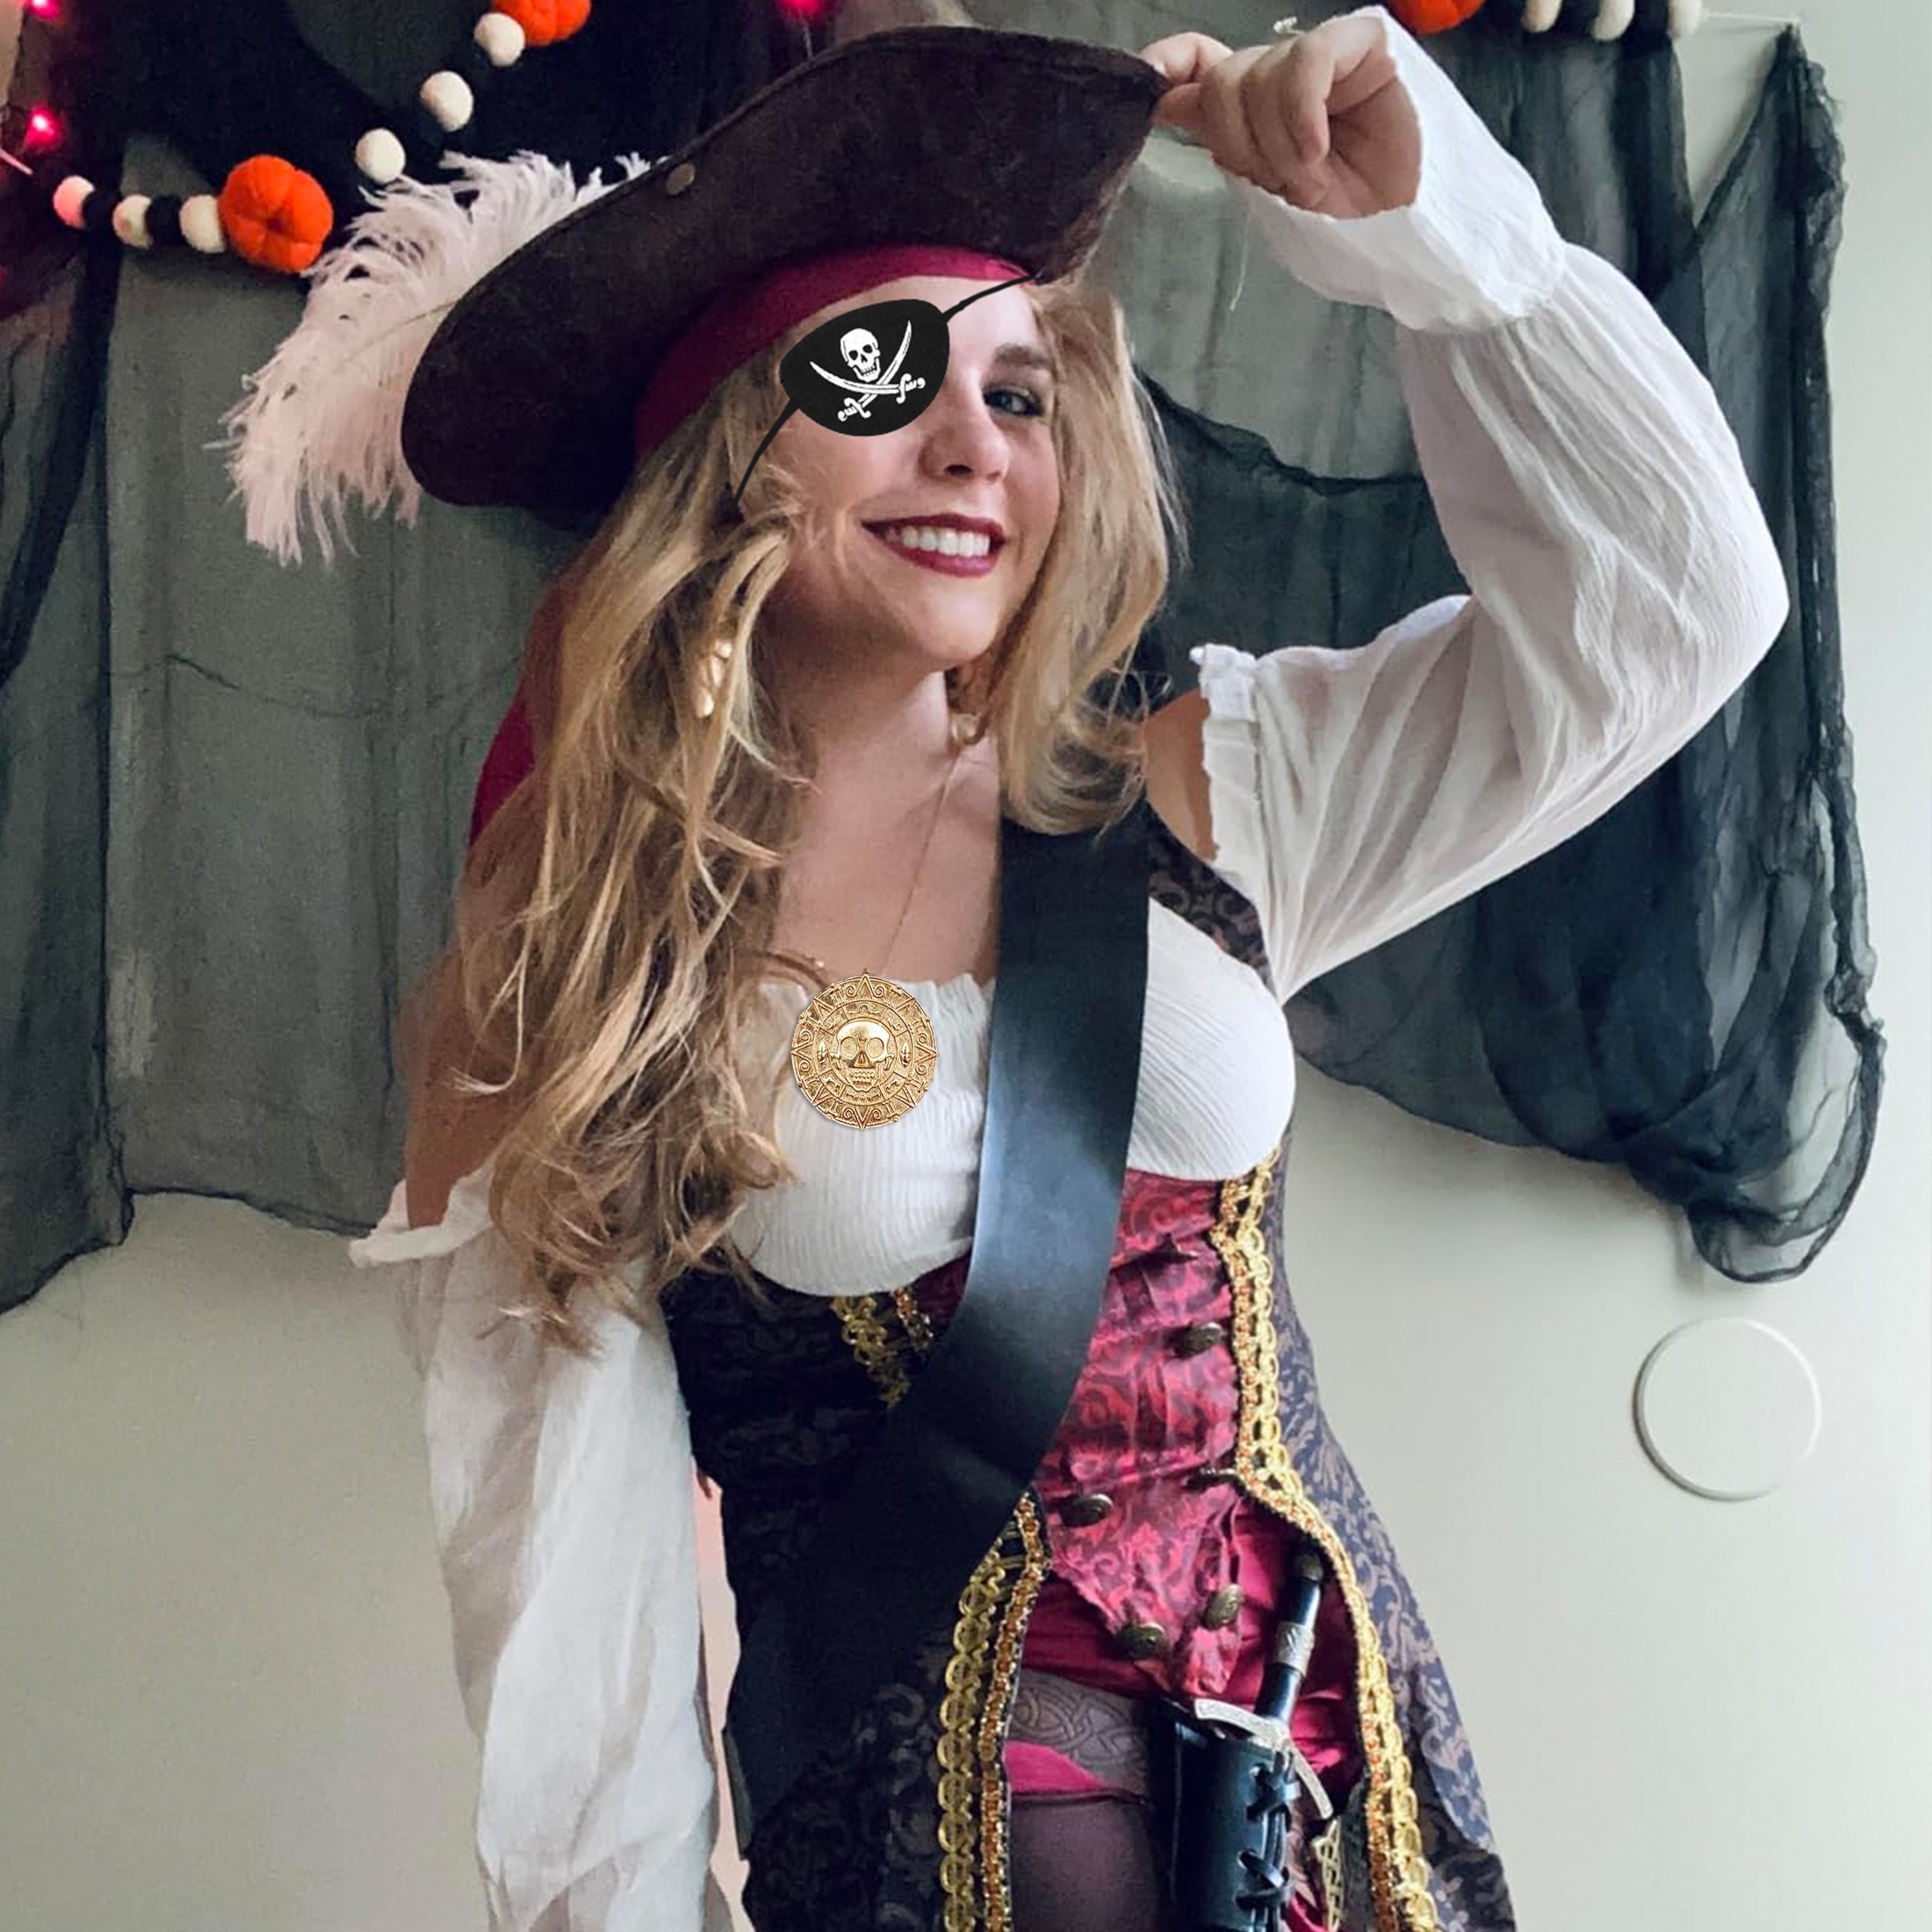 Disfraz de Capitán Pirata Negro para hombre  Disfraces de halloween para  adultos, Disfraz de pirata, Disfraz pirata hombre